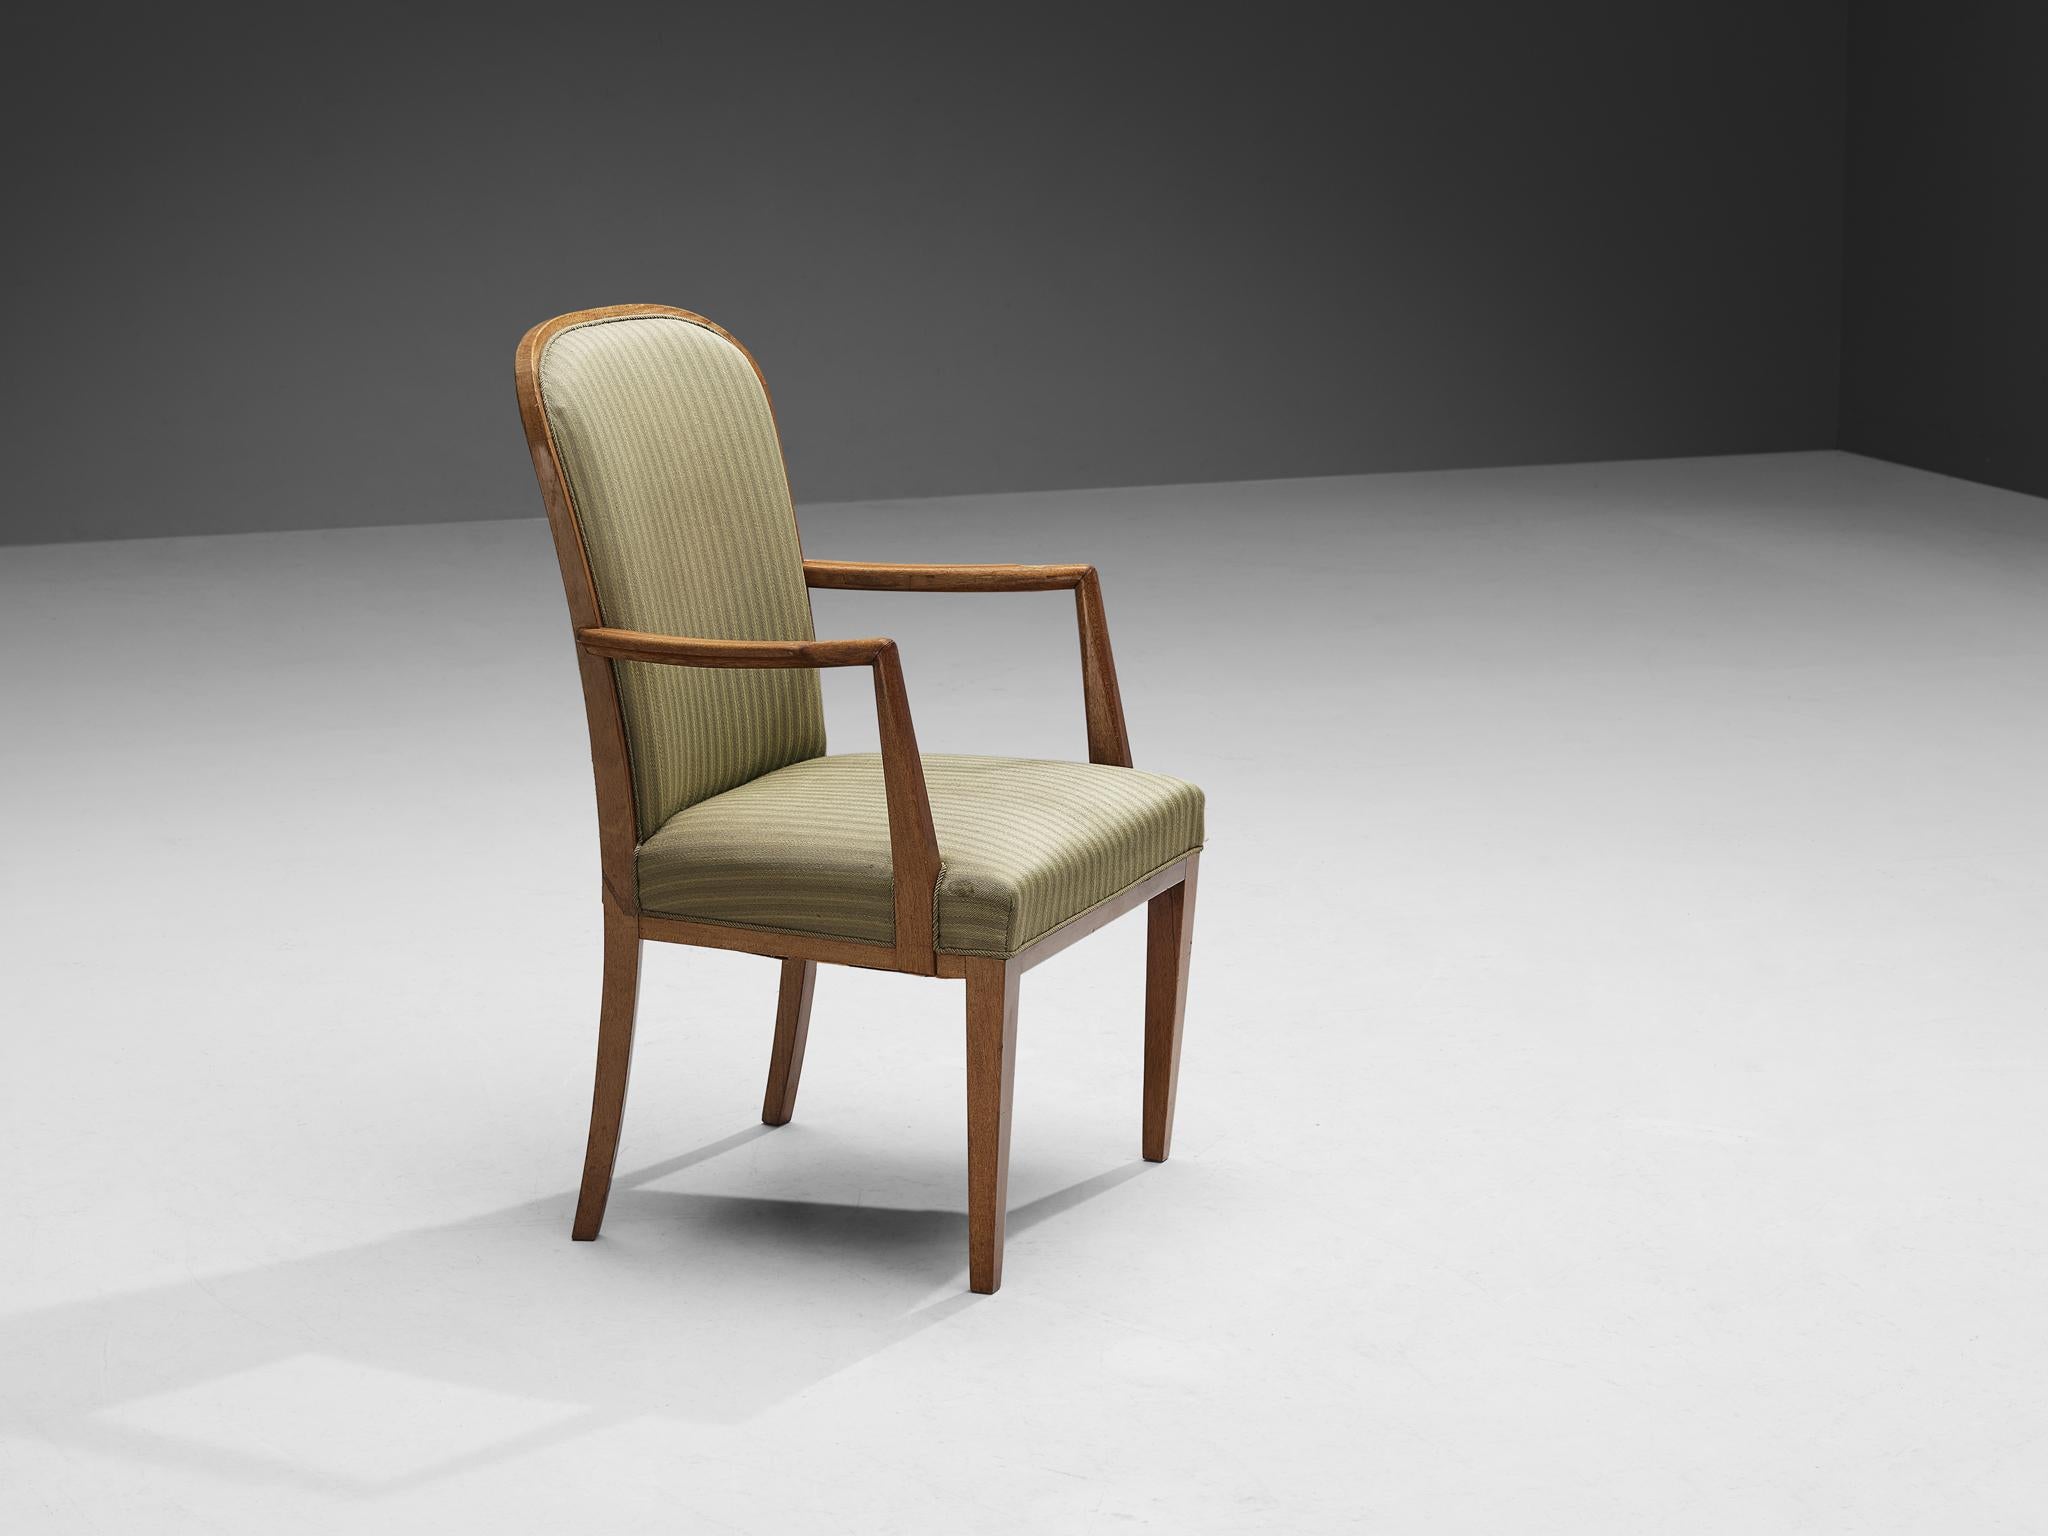 Chaise à dossier haut, chêne, tissu, Scandinavie, années 1950.

Cette chaise à dossier haut ressemble fortement au vocabulaire du designer suédois Carl Malmsten. Les lignes et les courbes uniques du design sont frappantes et les pieds en bois